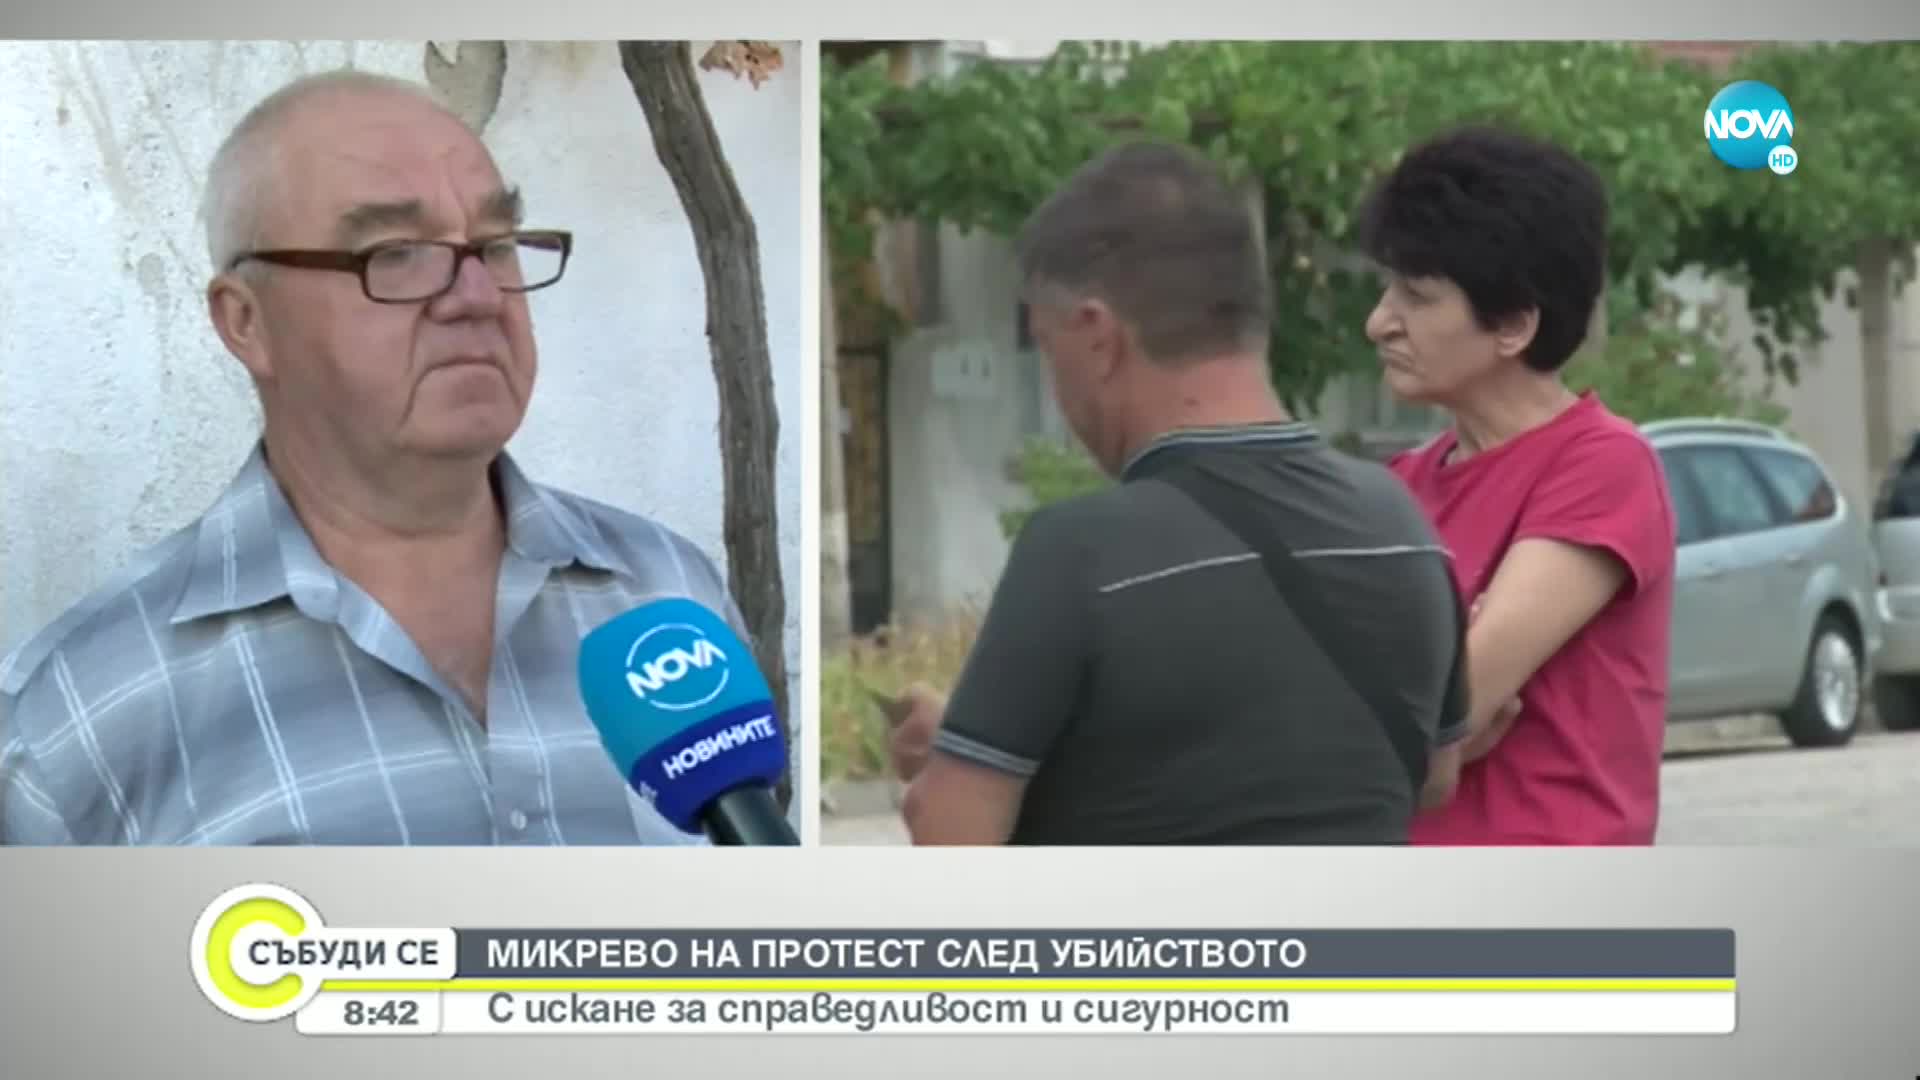 Жители на село Микрево излязоха на протест след убийството на 82-годишен мъж